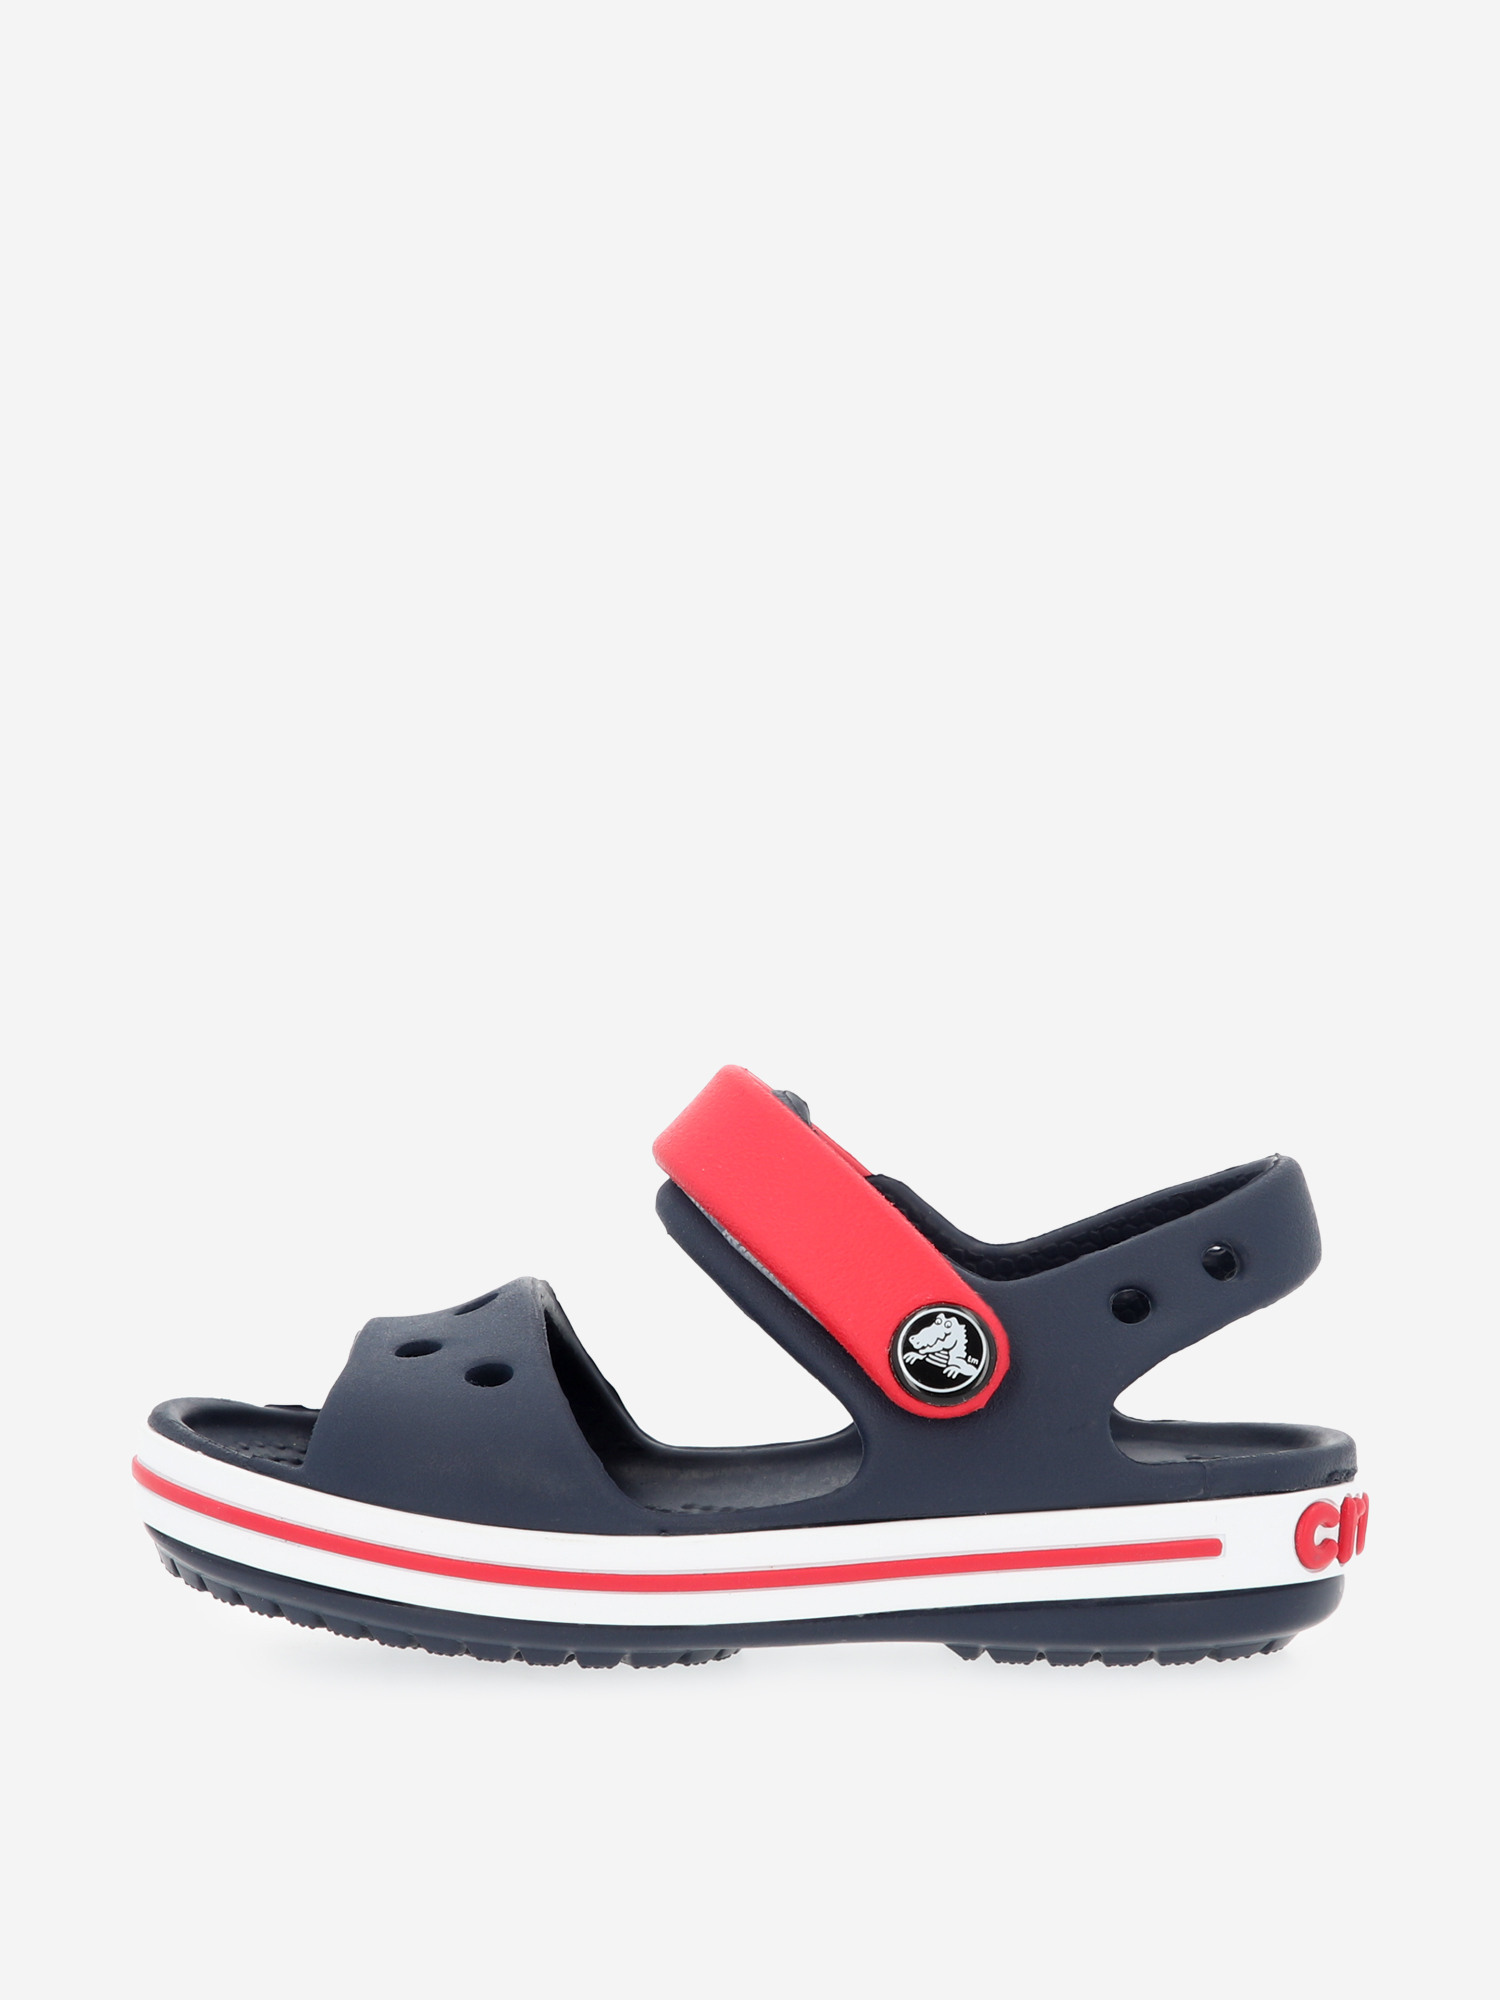 Туфли открытые пляжные детские Crocs темно-синий/красный/белый цвет — купить за 91 руб. в интернет-магазине Спортмастер